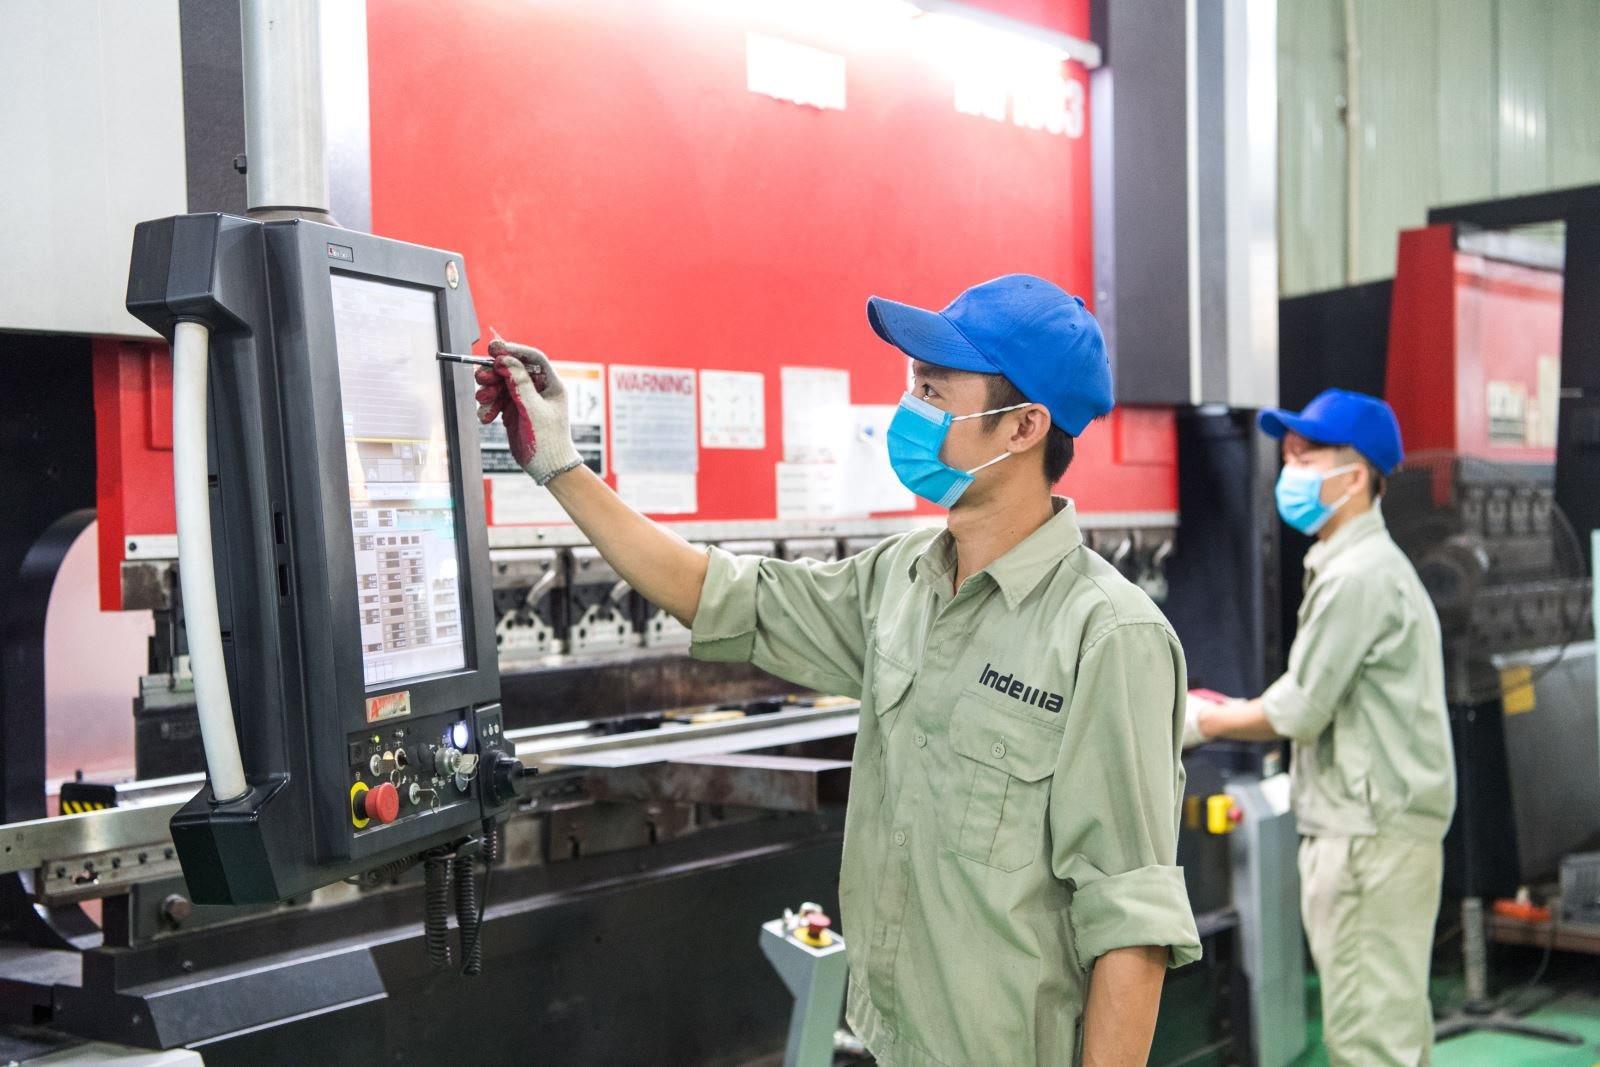 [ictvietnam] Đa dạng hình thức đào tạo, nâng cao chất lượng nguồn nhân lực cho ngành công nghiệp hỗ trợ